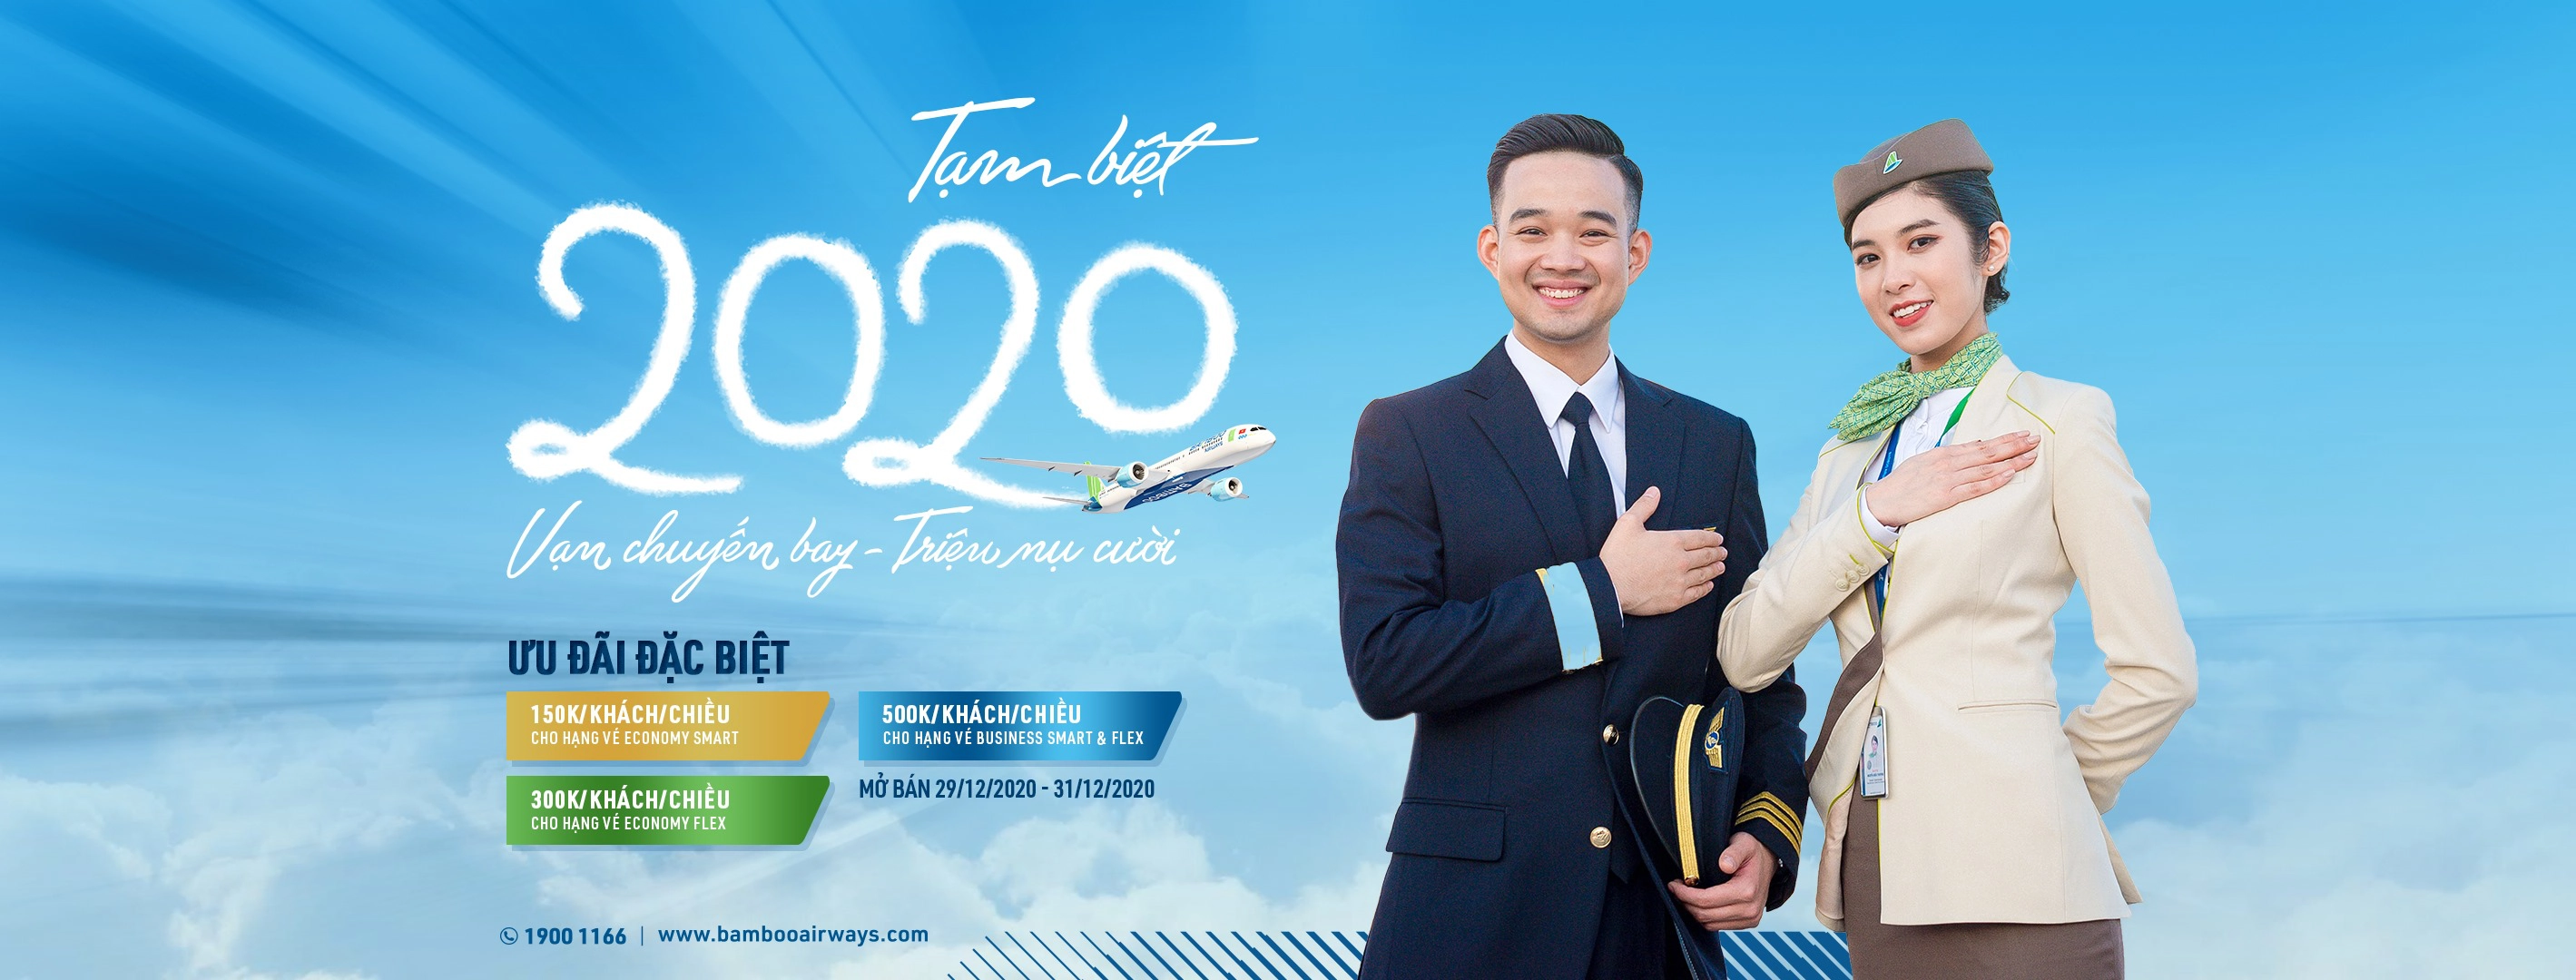 “Good bye 2020” với chương trình khuyến mãi hấp dẫn của Bamboo Airways